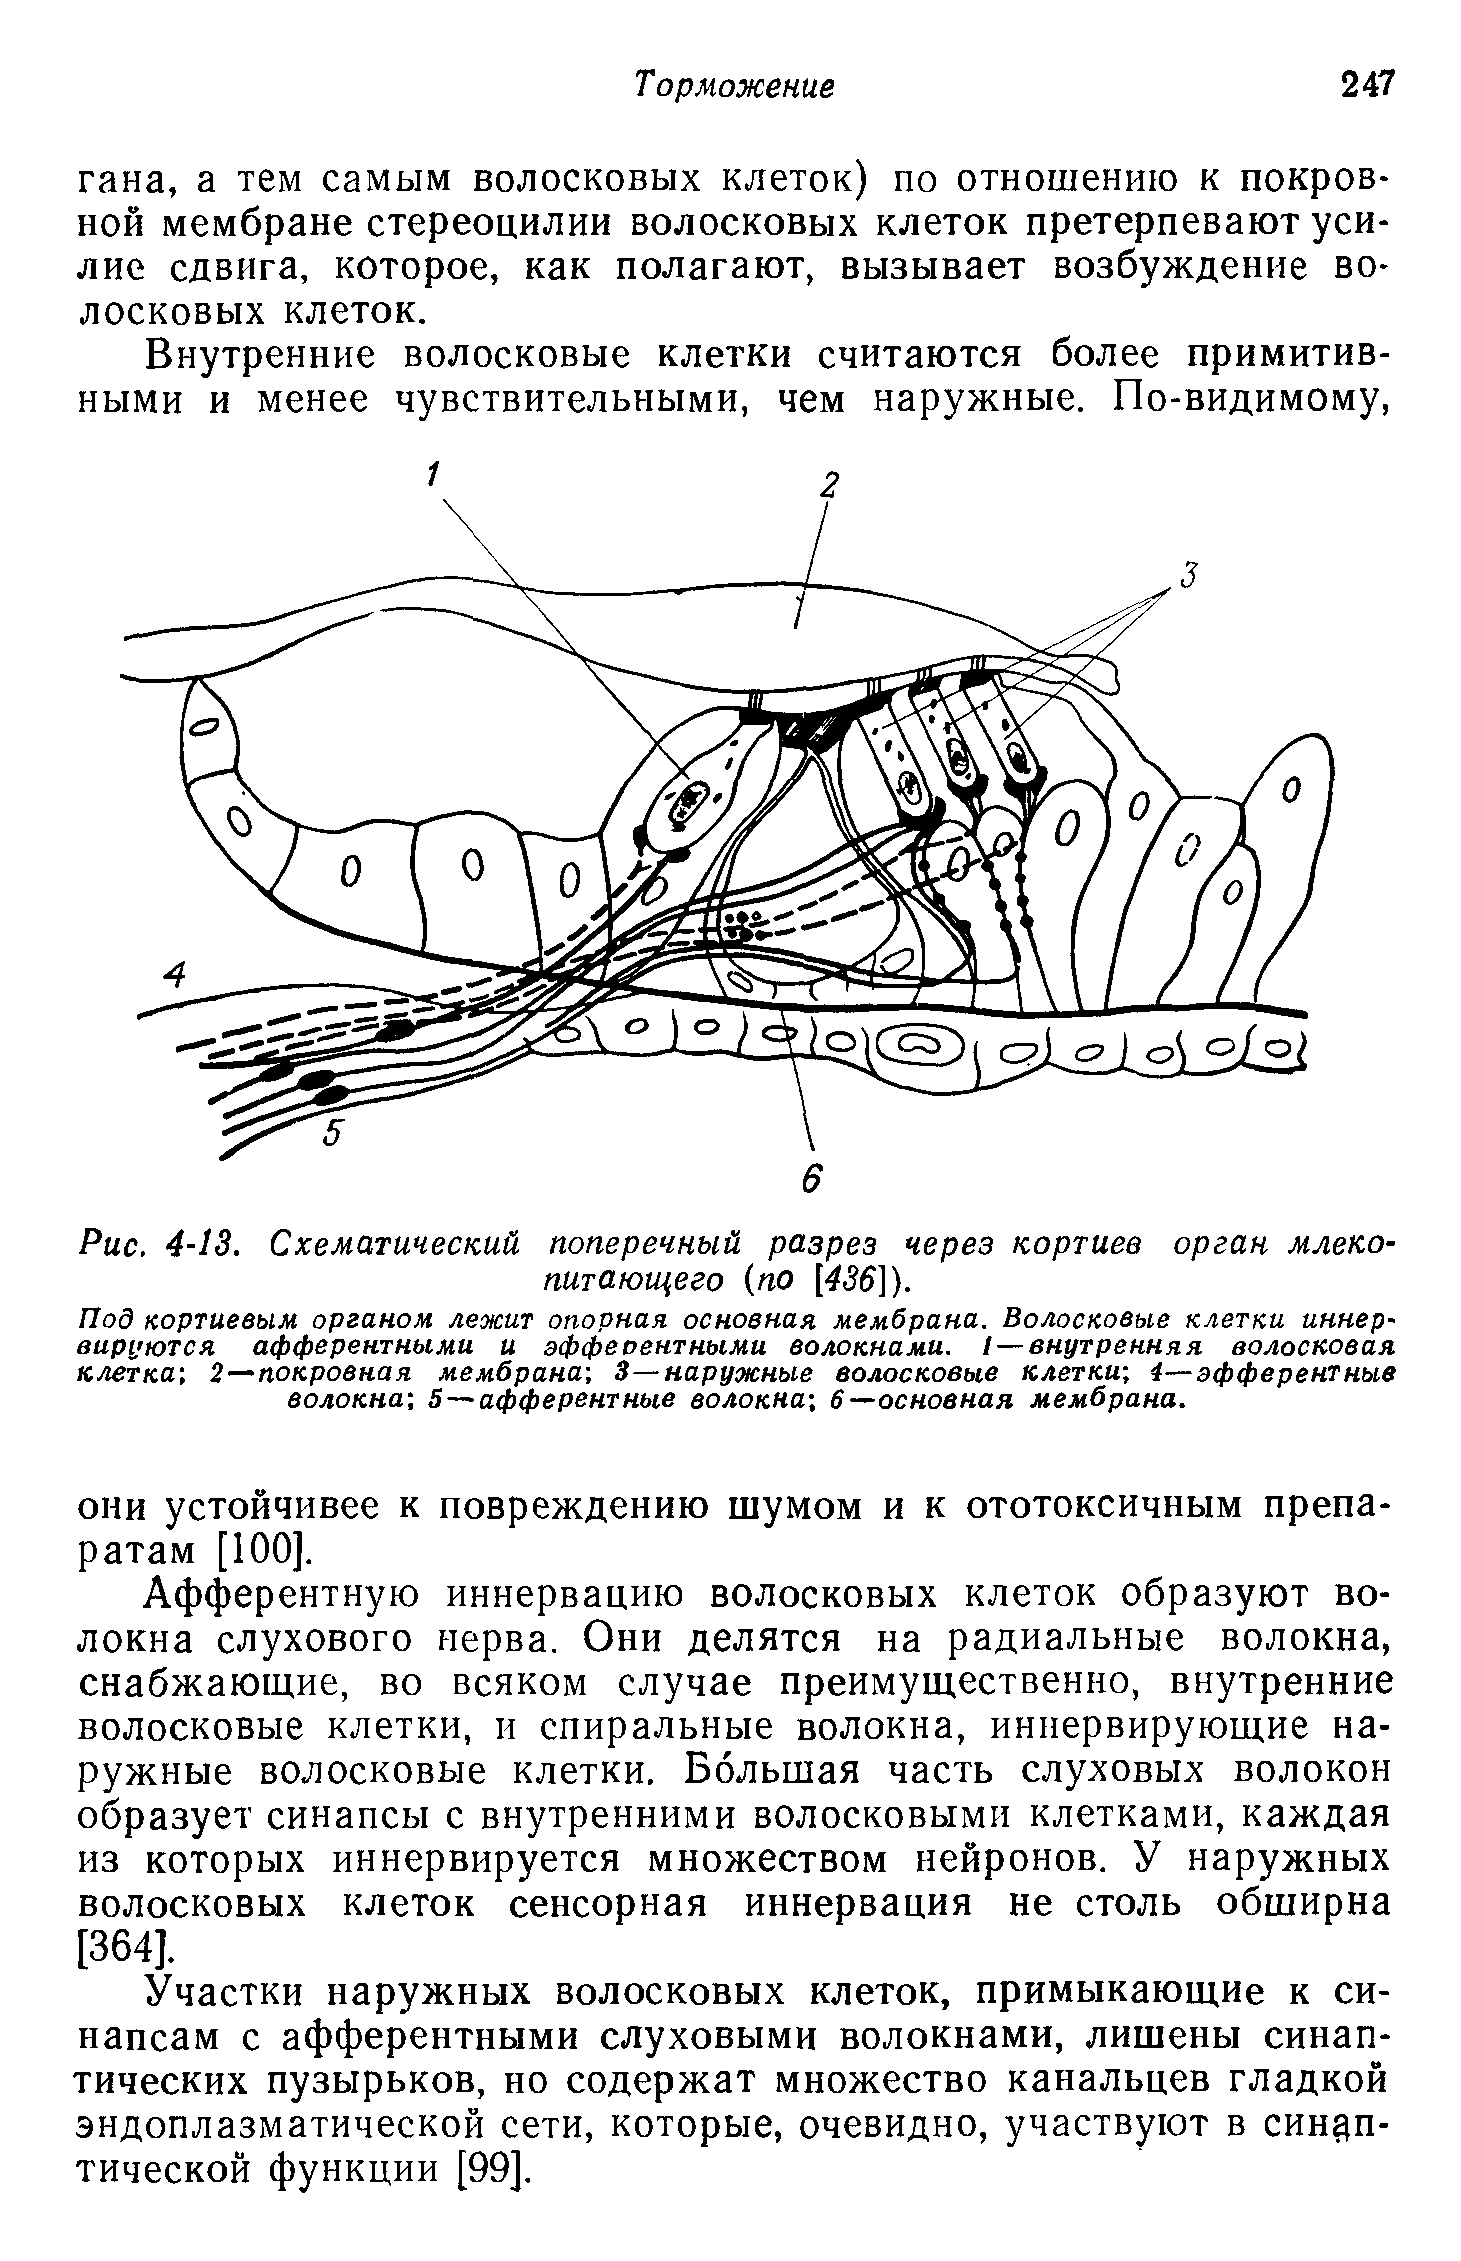 Рис. 4-13. Схематический поперечный разрез через кортиев орган млекопитающего (по [456]).